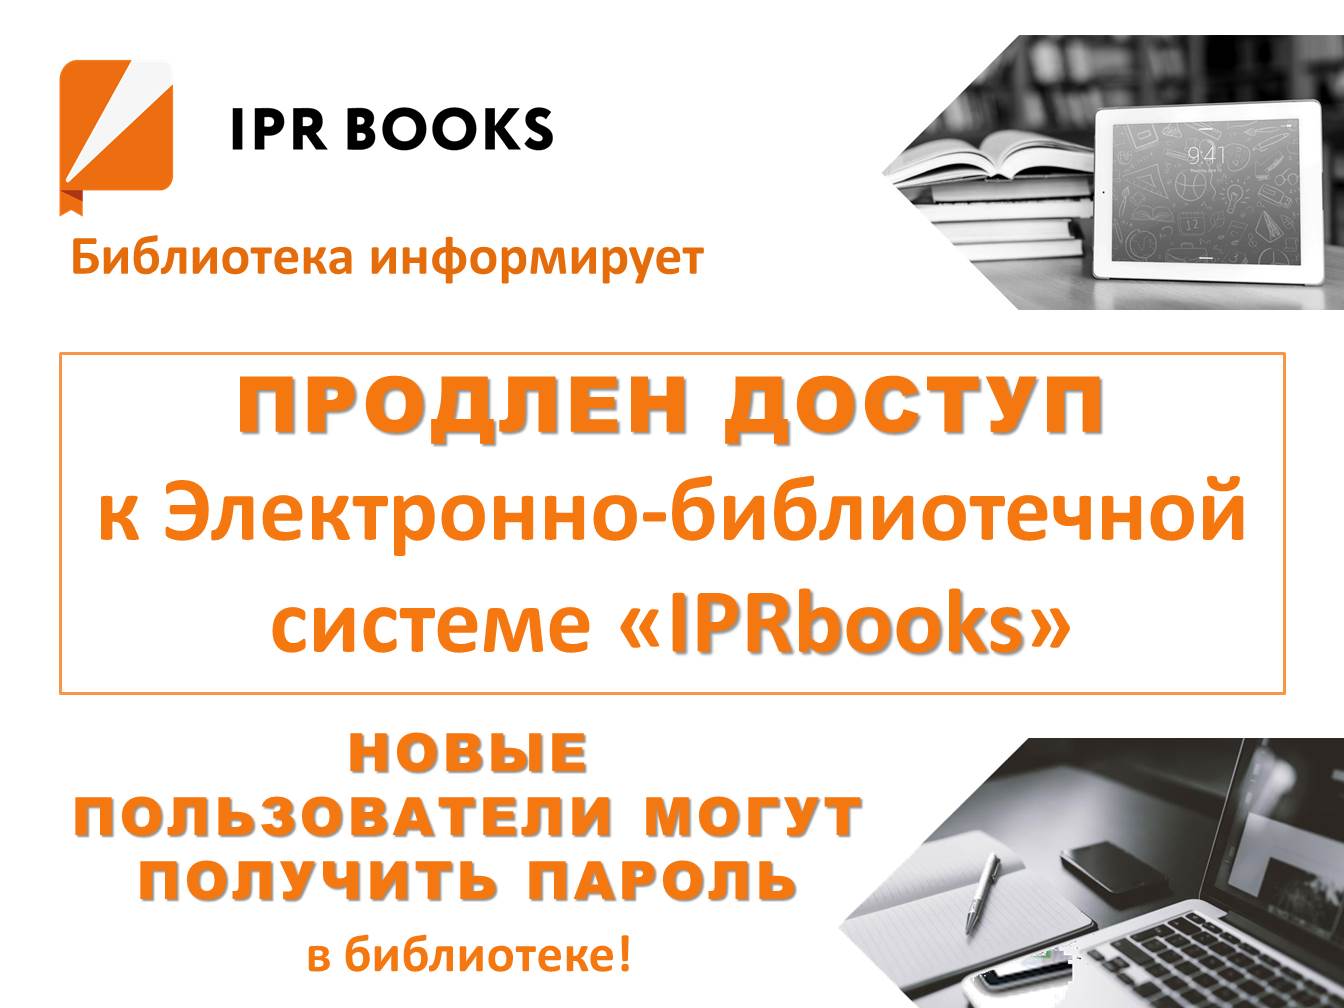 Доступ к электронной библиотеке. IPRBOOKS электронная библиотека. Доступ к электронно-библиотечной системе. Доступ к электронным библиотекам. Доступ для библиотек.